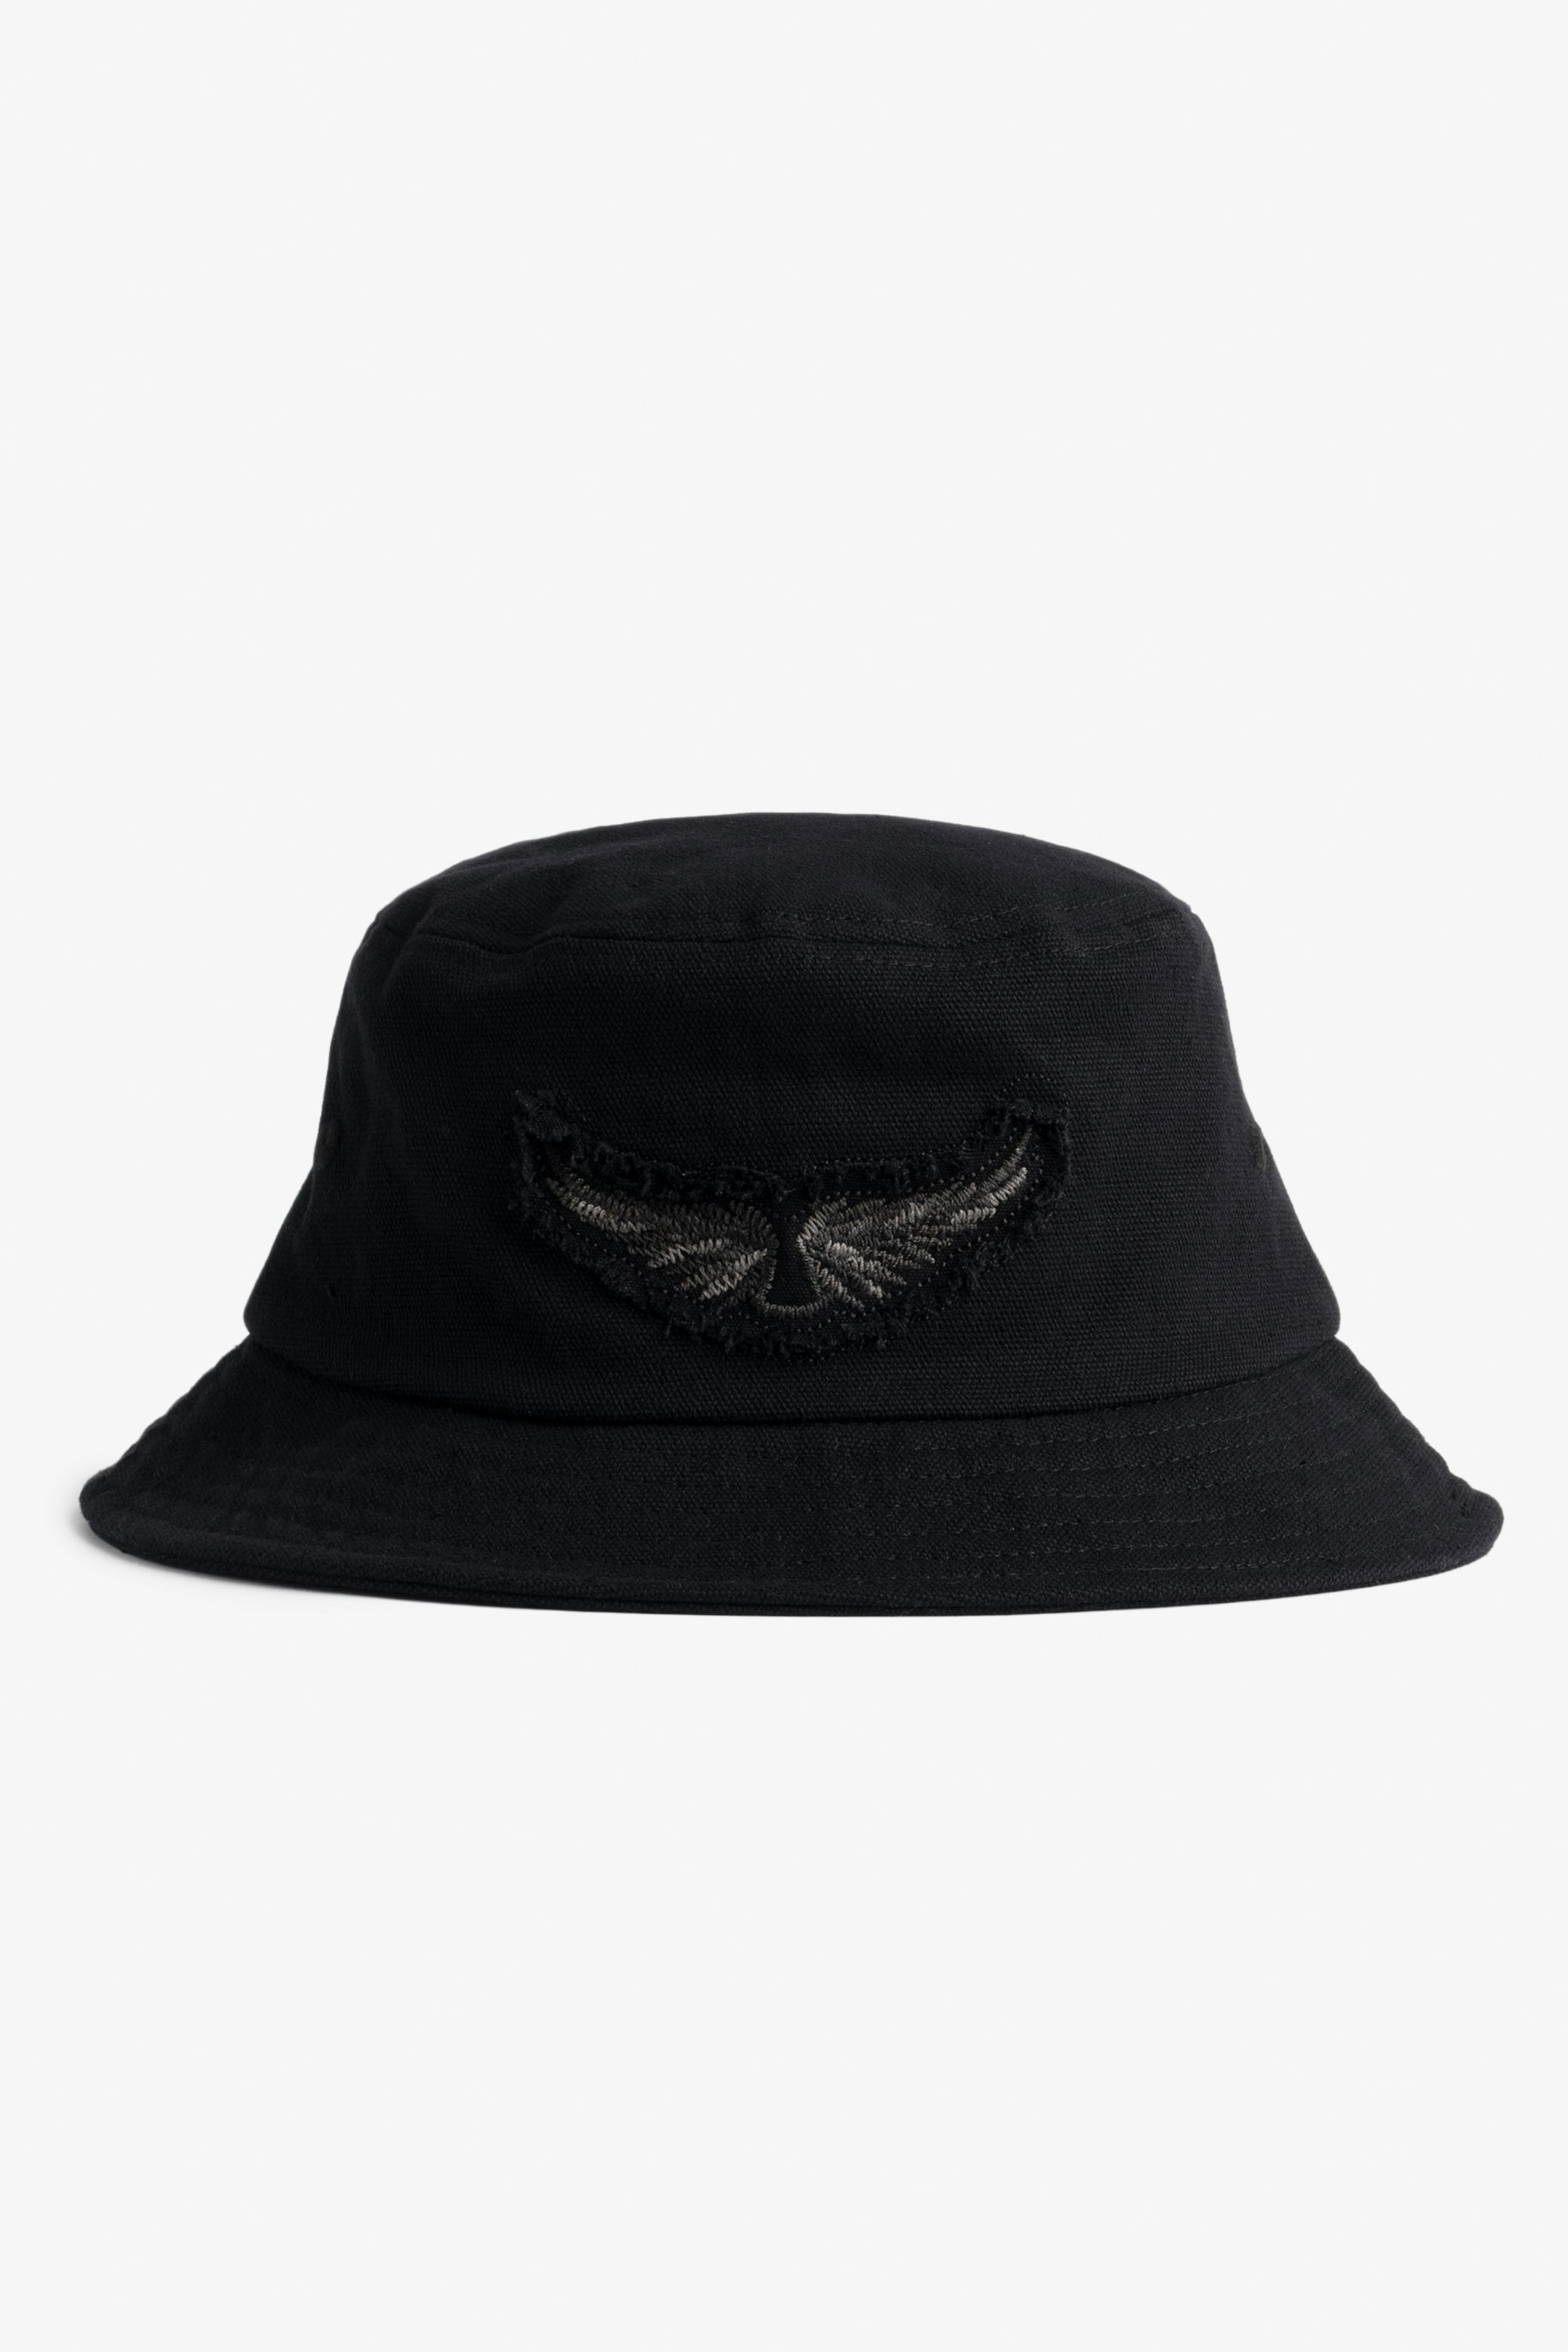 Wings Bucket Hat Women's bucket hat in black cotton